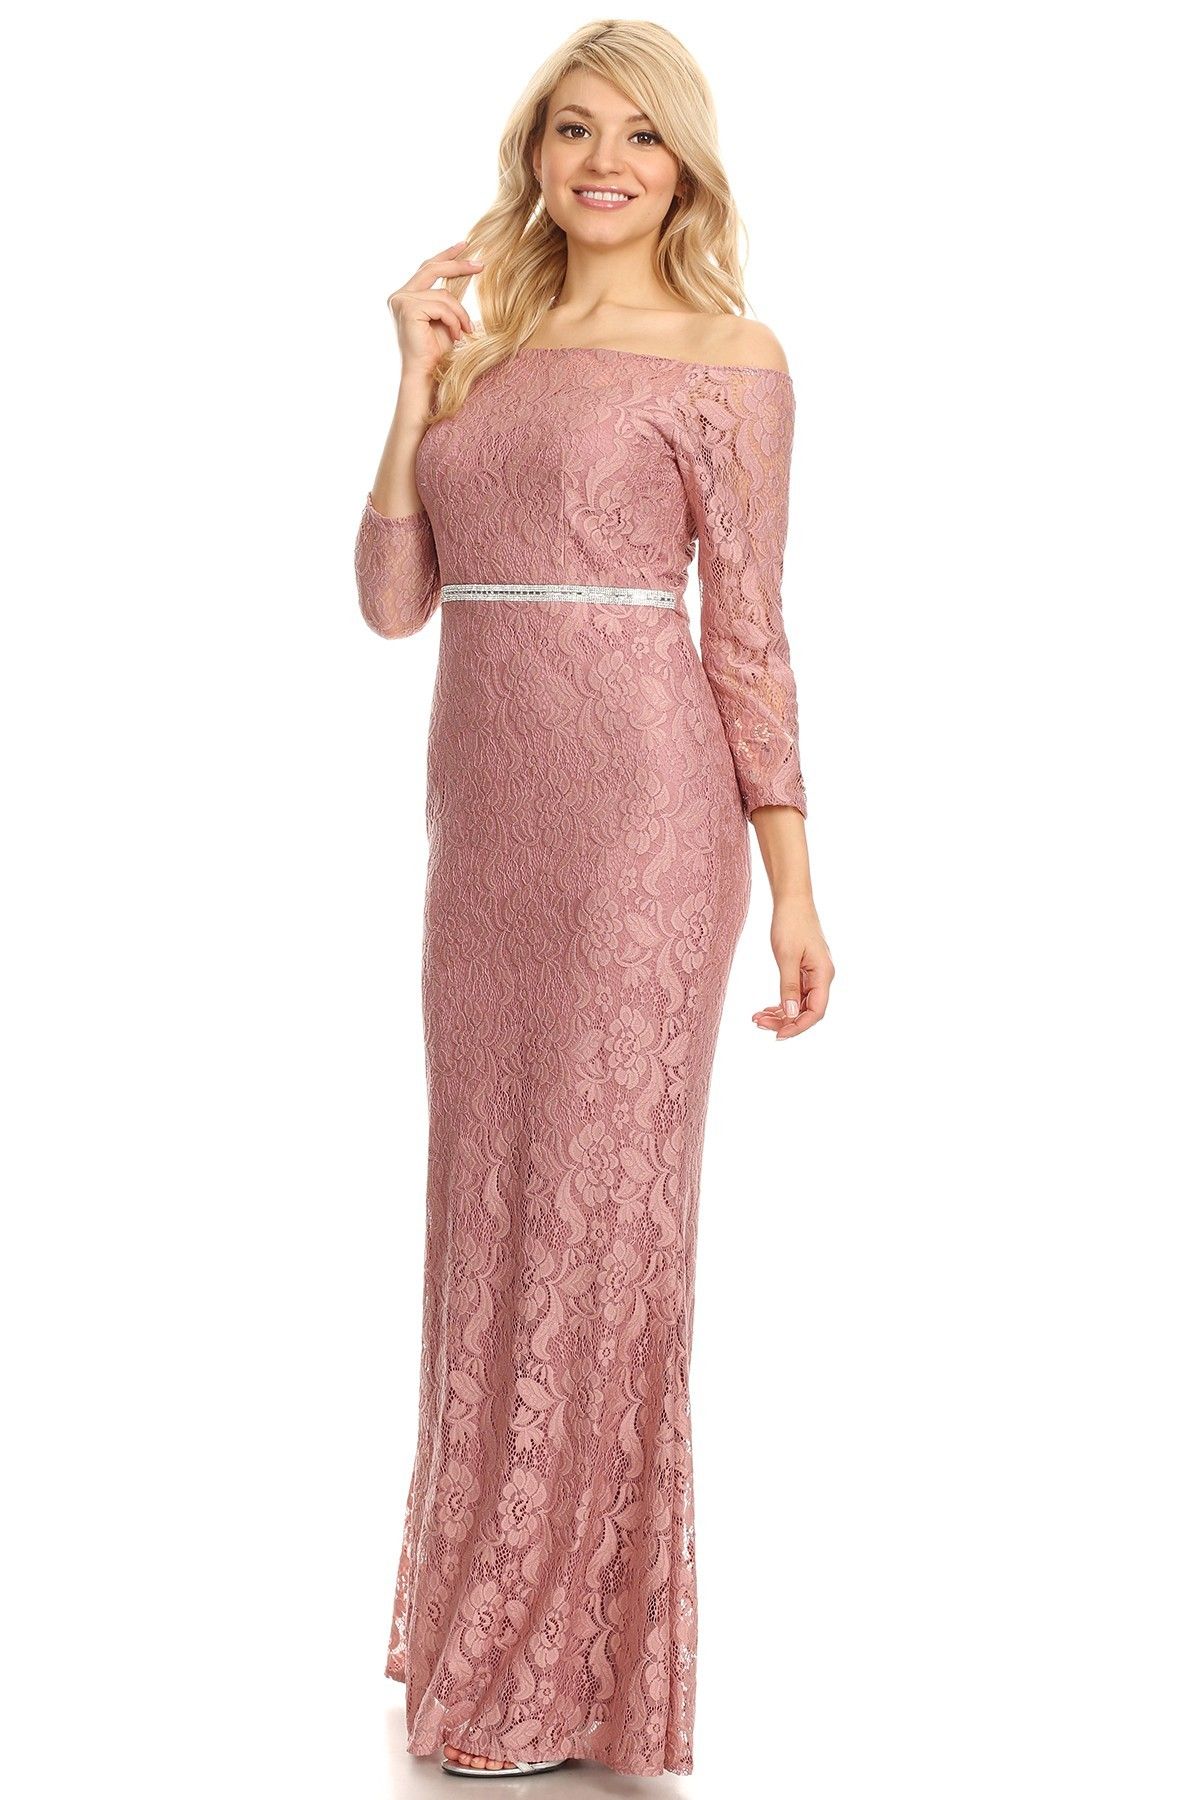 Celavie 6343L Off-Shoulder Long Sleeved Lace Formal Dress Mauve